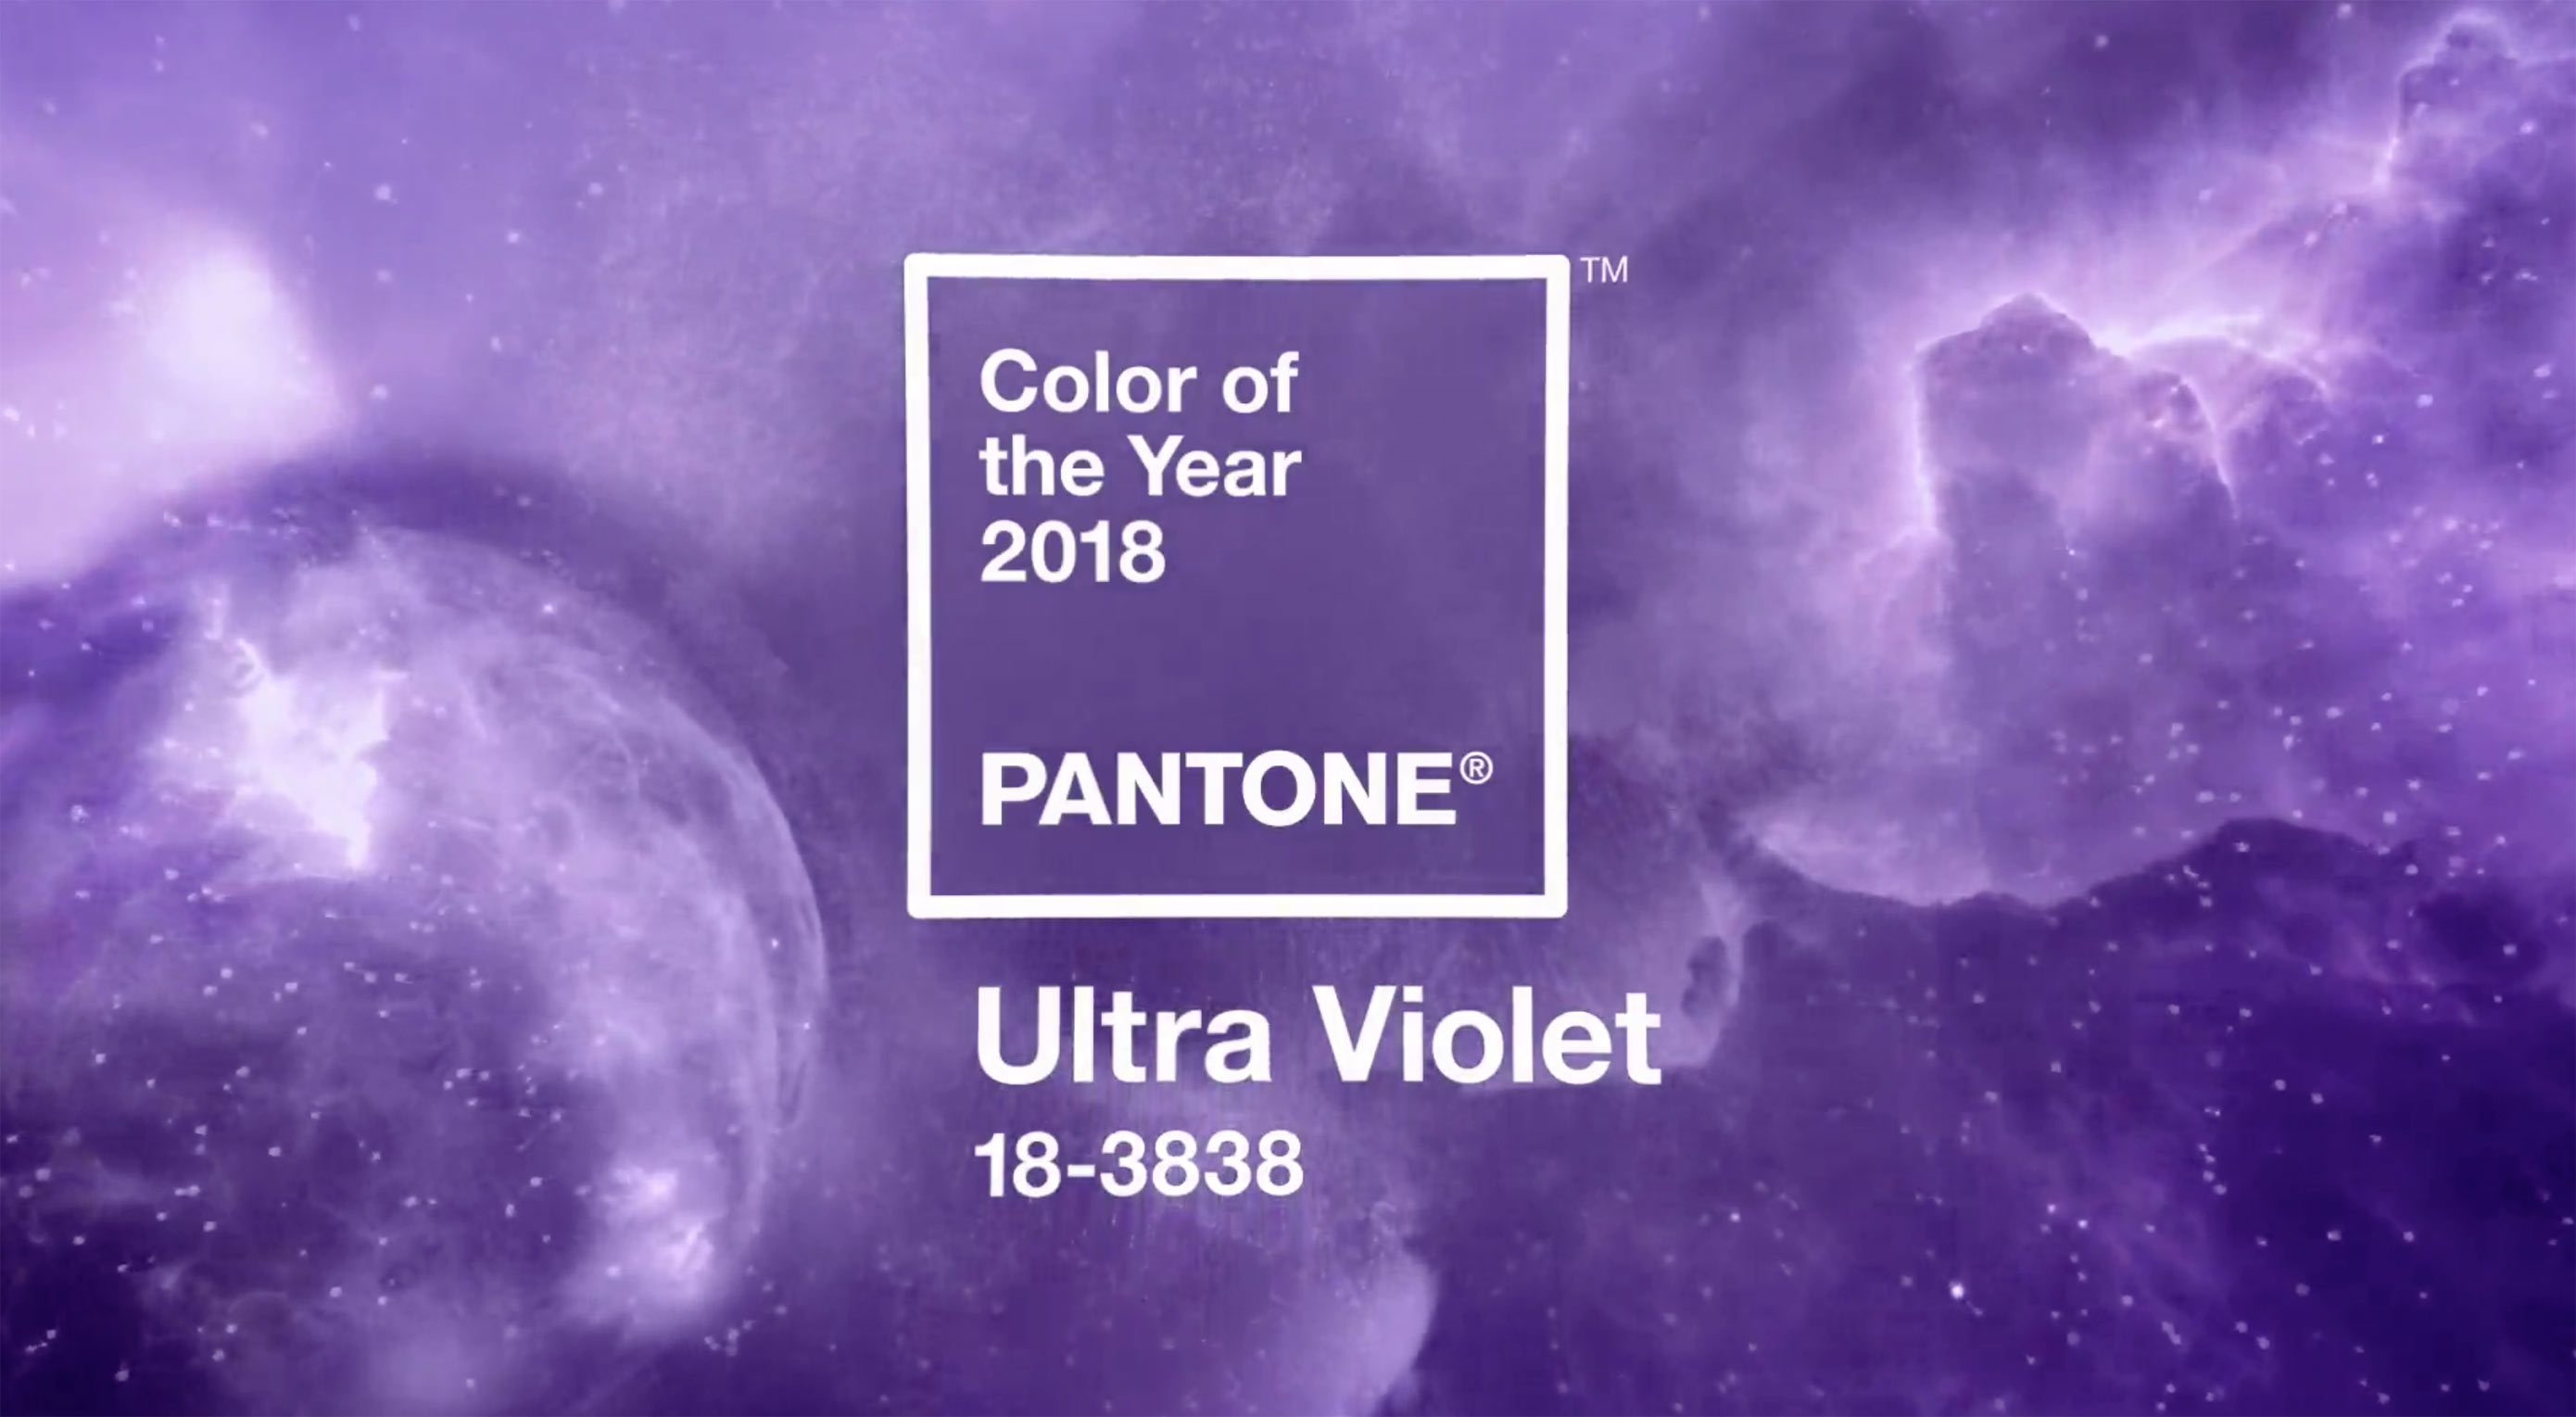 Aká je farba roka 2018 podľa Pantone? Je ňou Ultra Violet